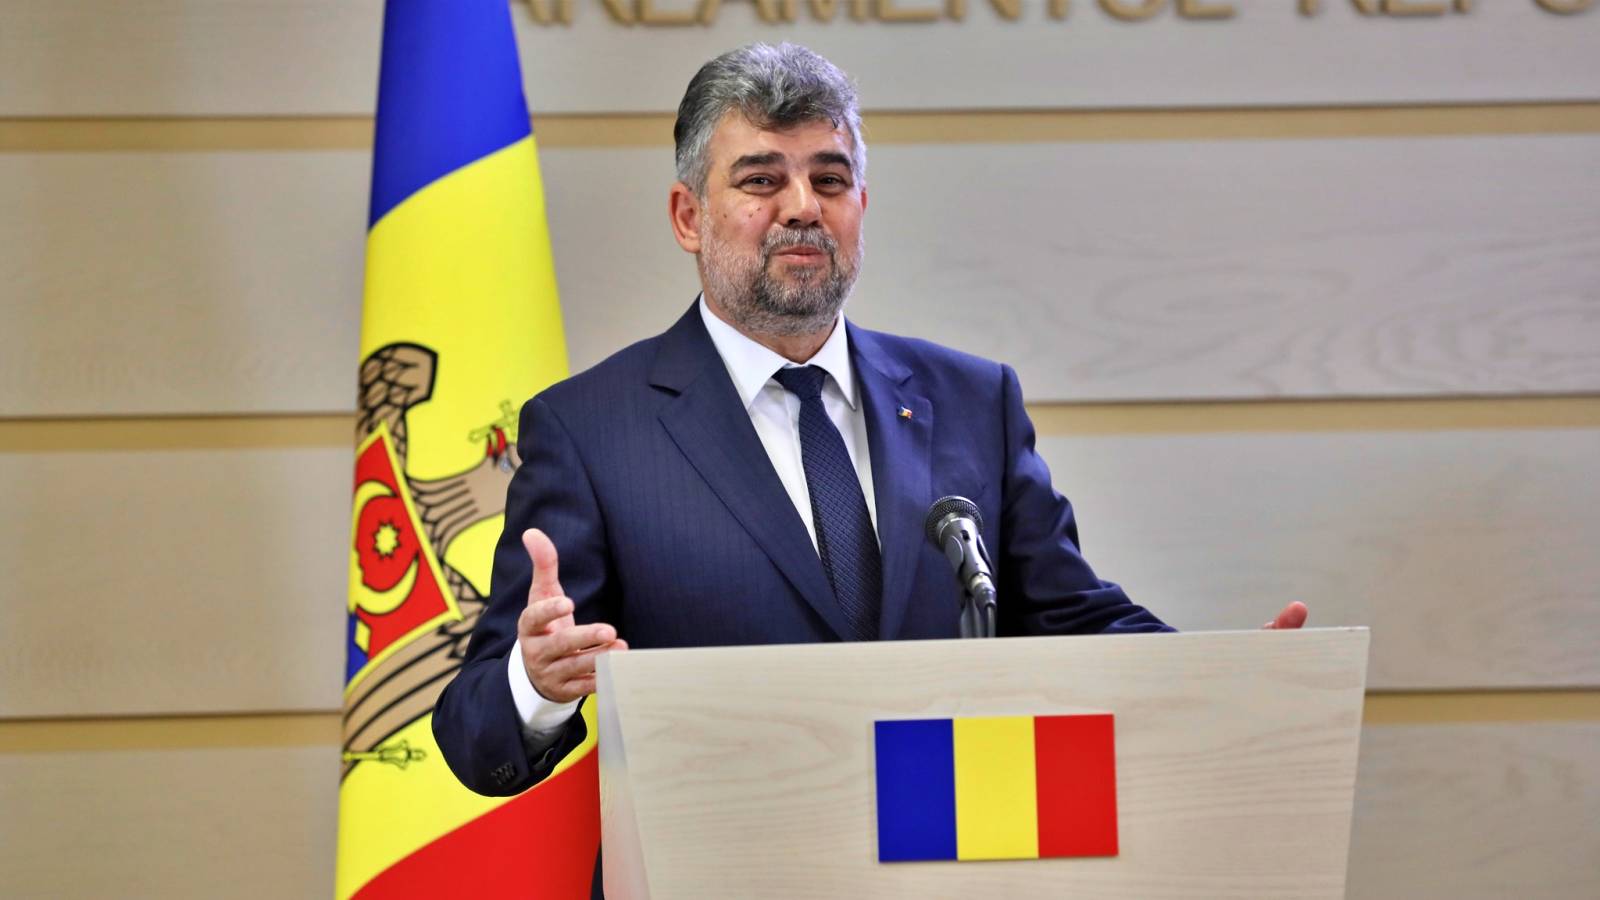 Marcel Ciolacu Anunturile Serioase ULTIMA ORA Presedintelui PSD Toata Romania